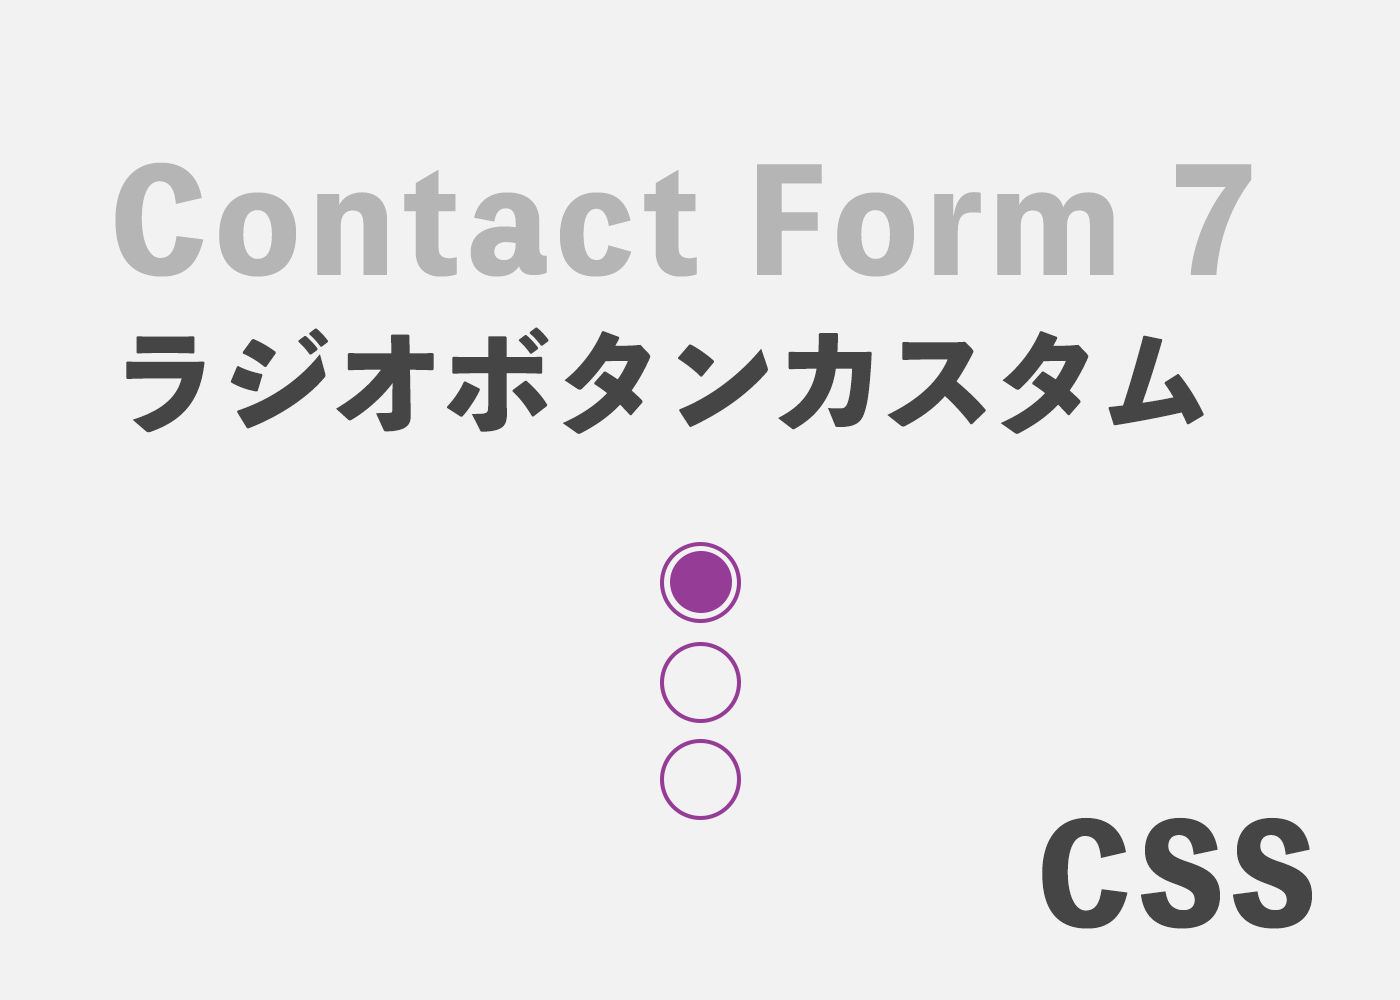 Contact Form 7ラジオボタンのカスタム